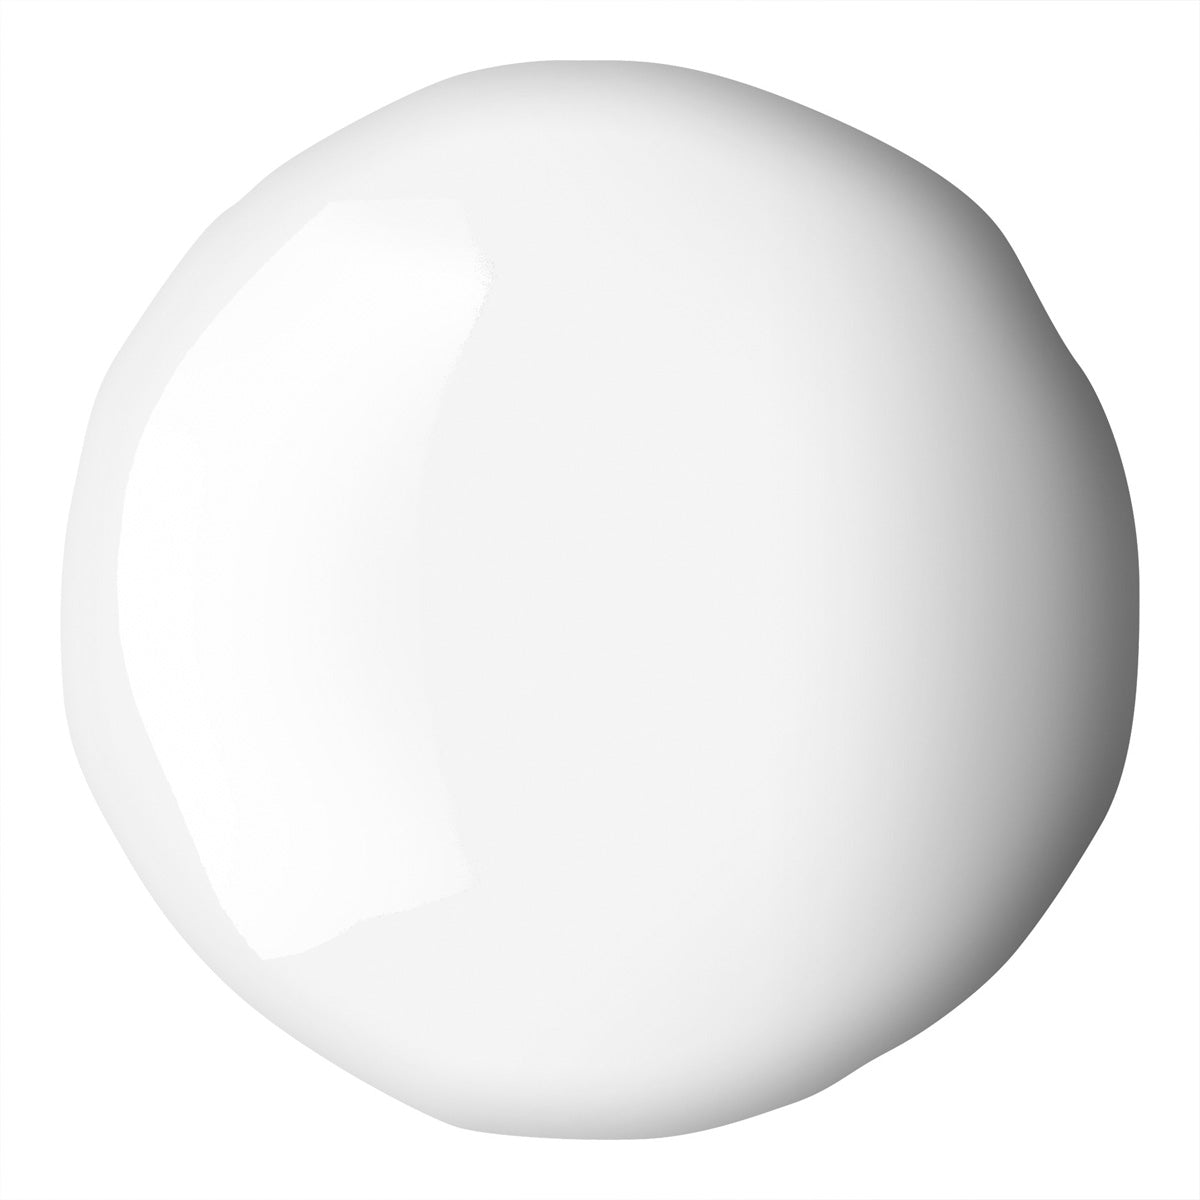 Liqitex Basics Fluid Acryl 118ml - Titanium White S1